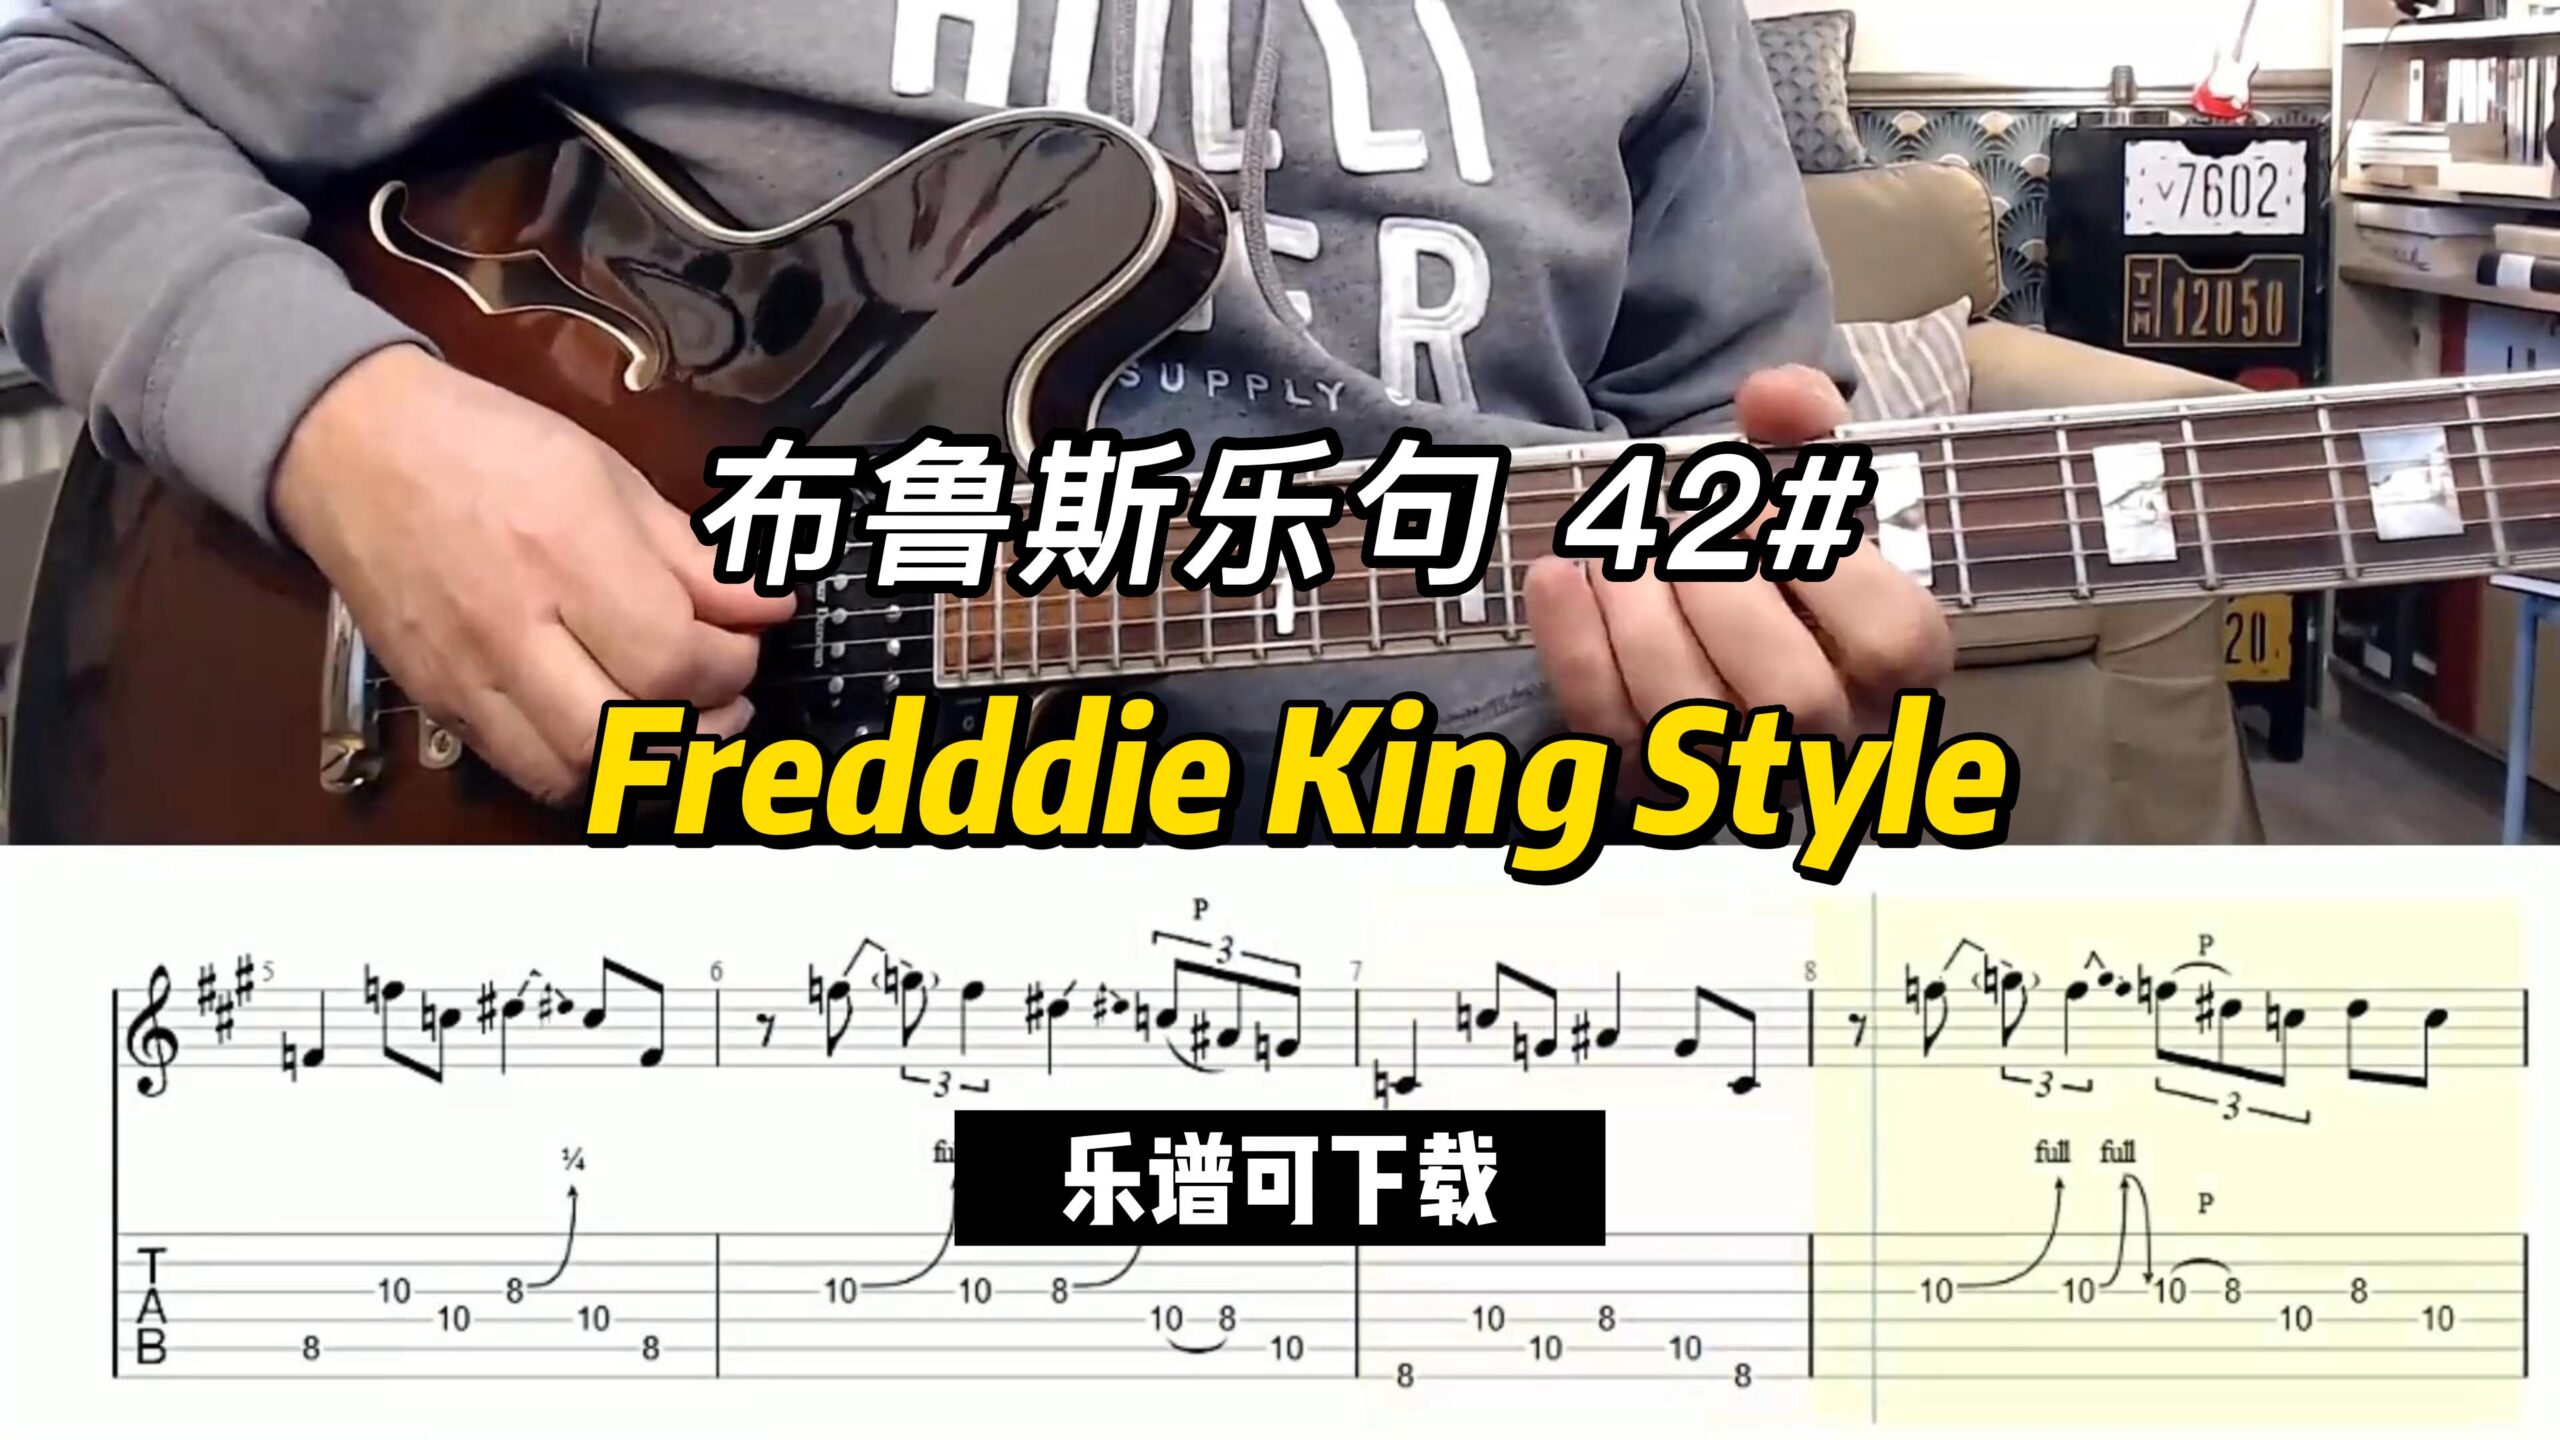 【布鲁斯乐句】 Fredddie King Style（乐谱可下载）-古桐博客